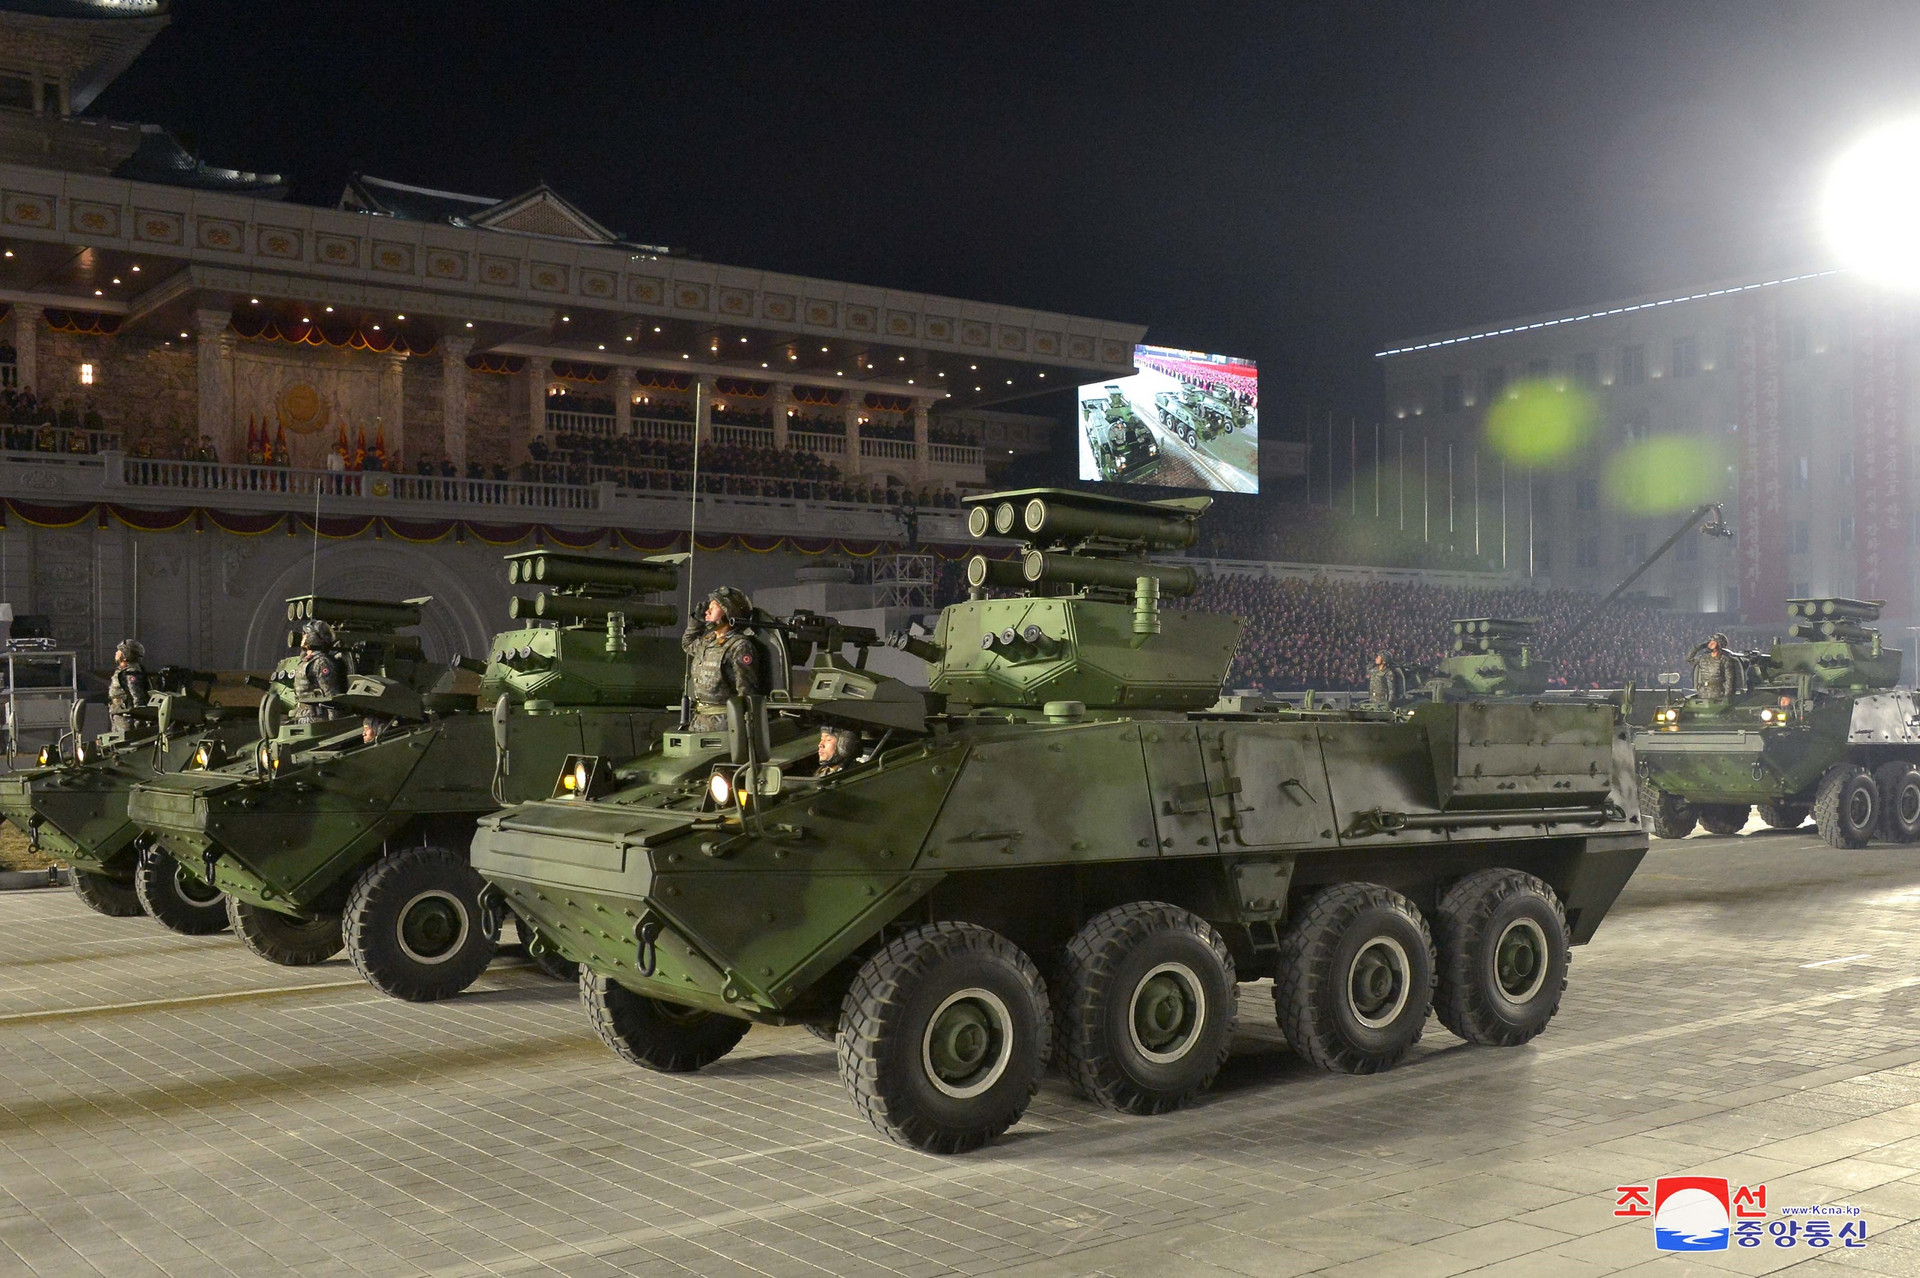 Ảnh: Dàn khí tài hoành tráng trong lễ duyệt binh Triều Tiên kỷ niệm đại hội đảng - 5